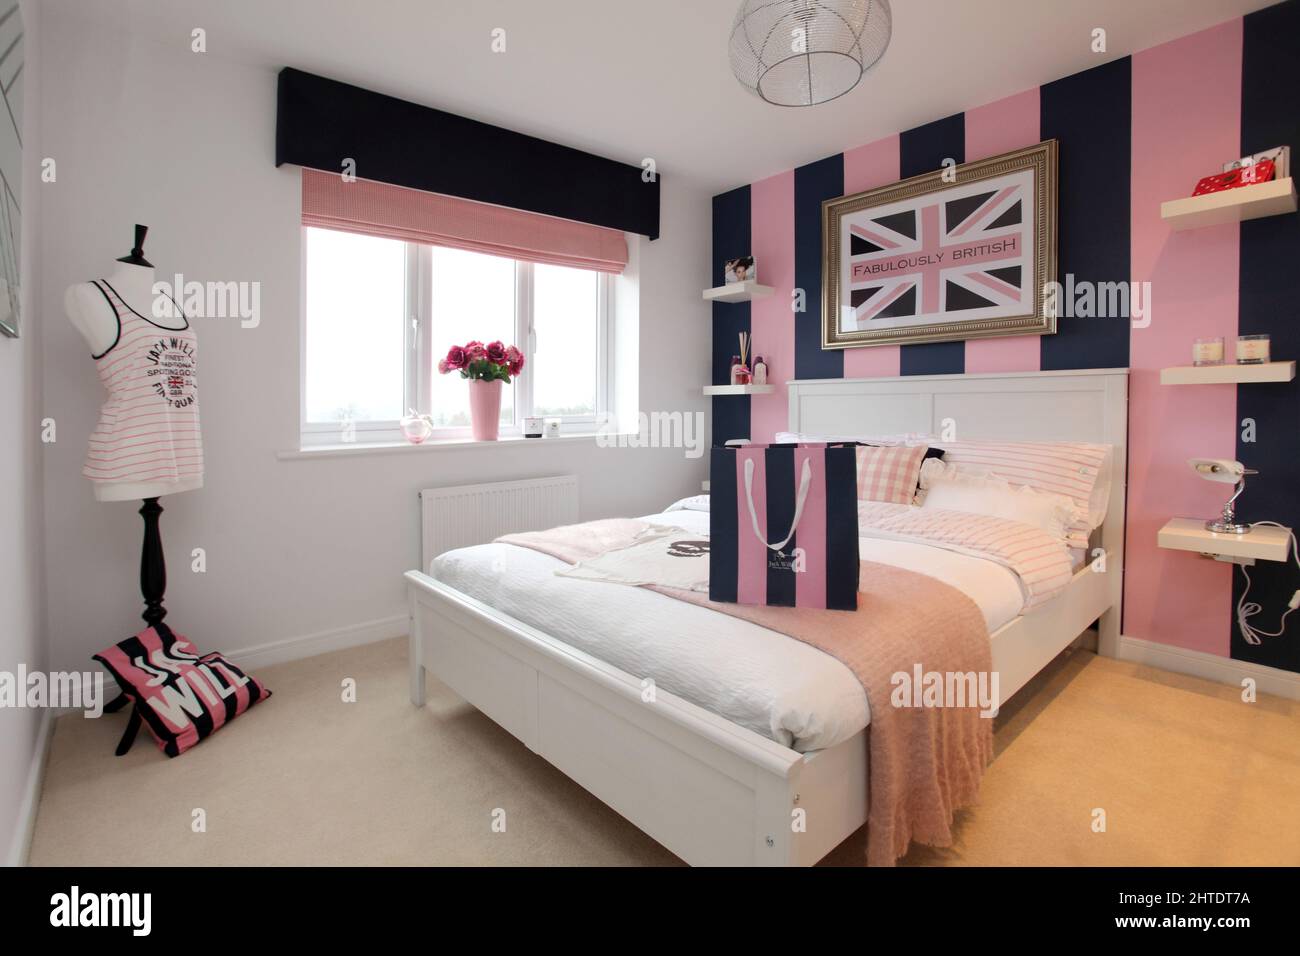 Dormitorio moderno en casa de nueva construcción, colcha, esquema de colores rosa beige, tema Jack Wills Foto de stock